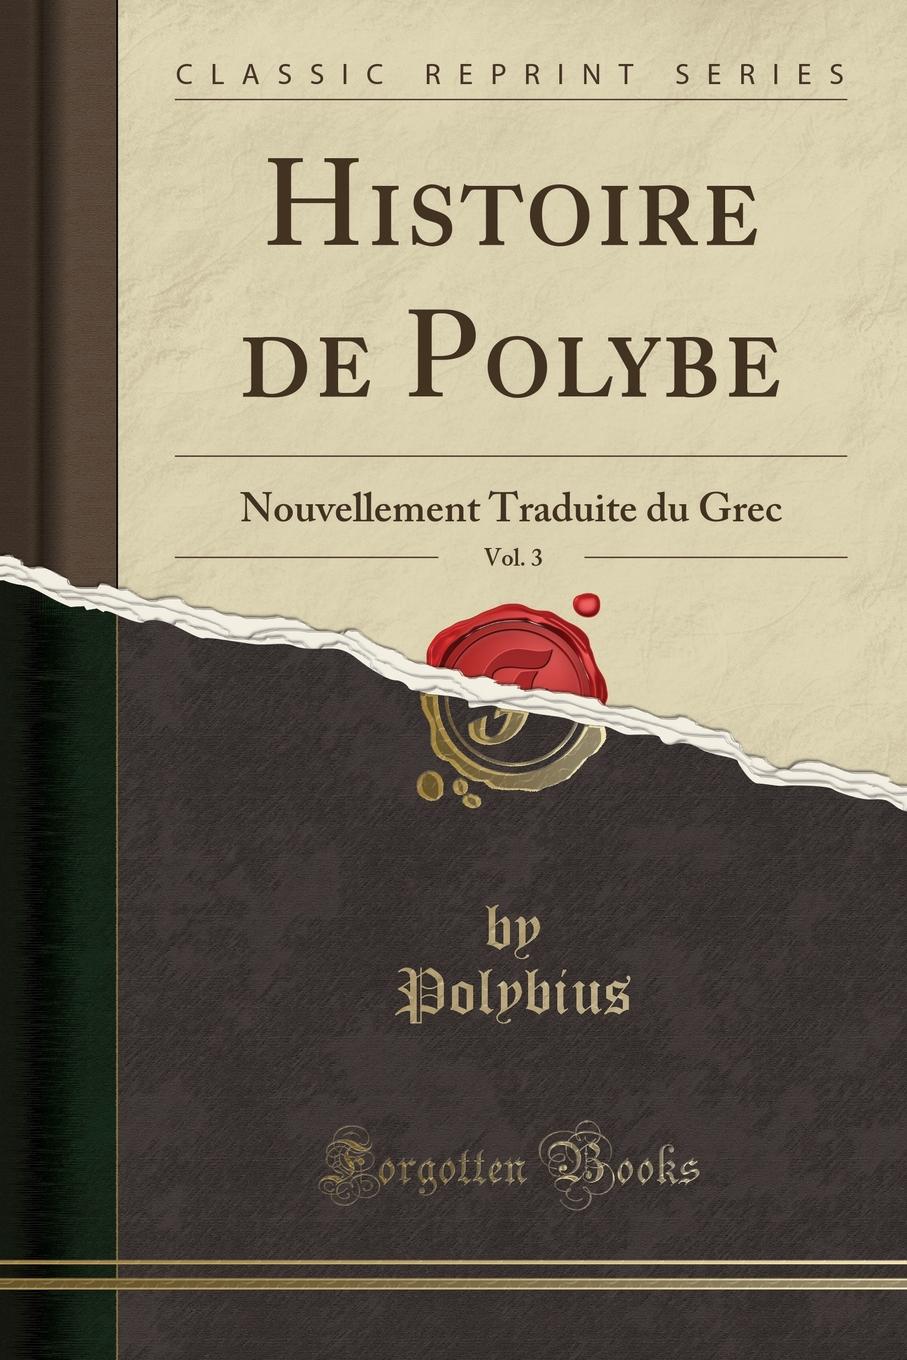 Histoire de Polybe, Vol. 3. Nouvellement Traduite du Grec (Classic Reprint)